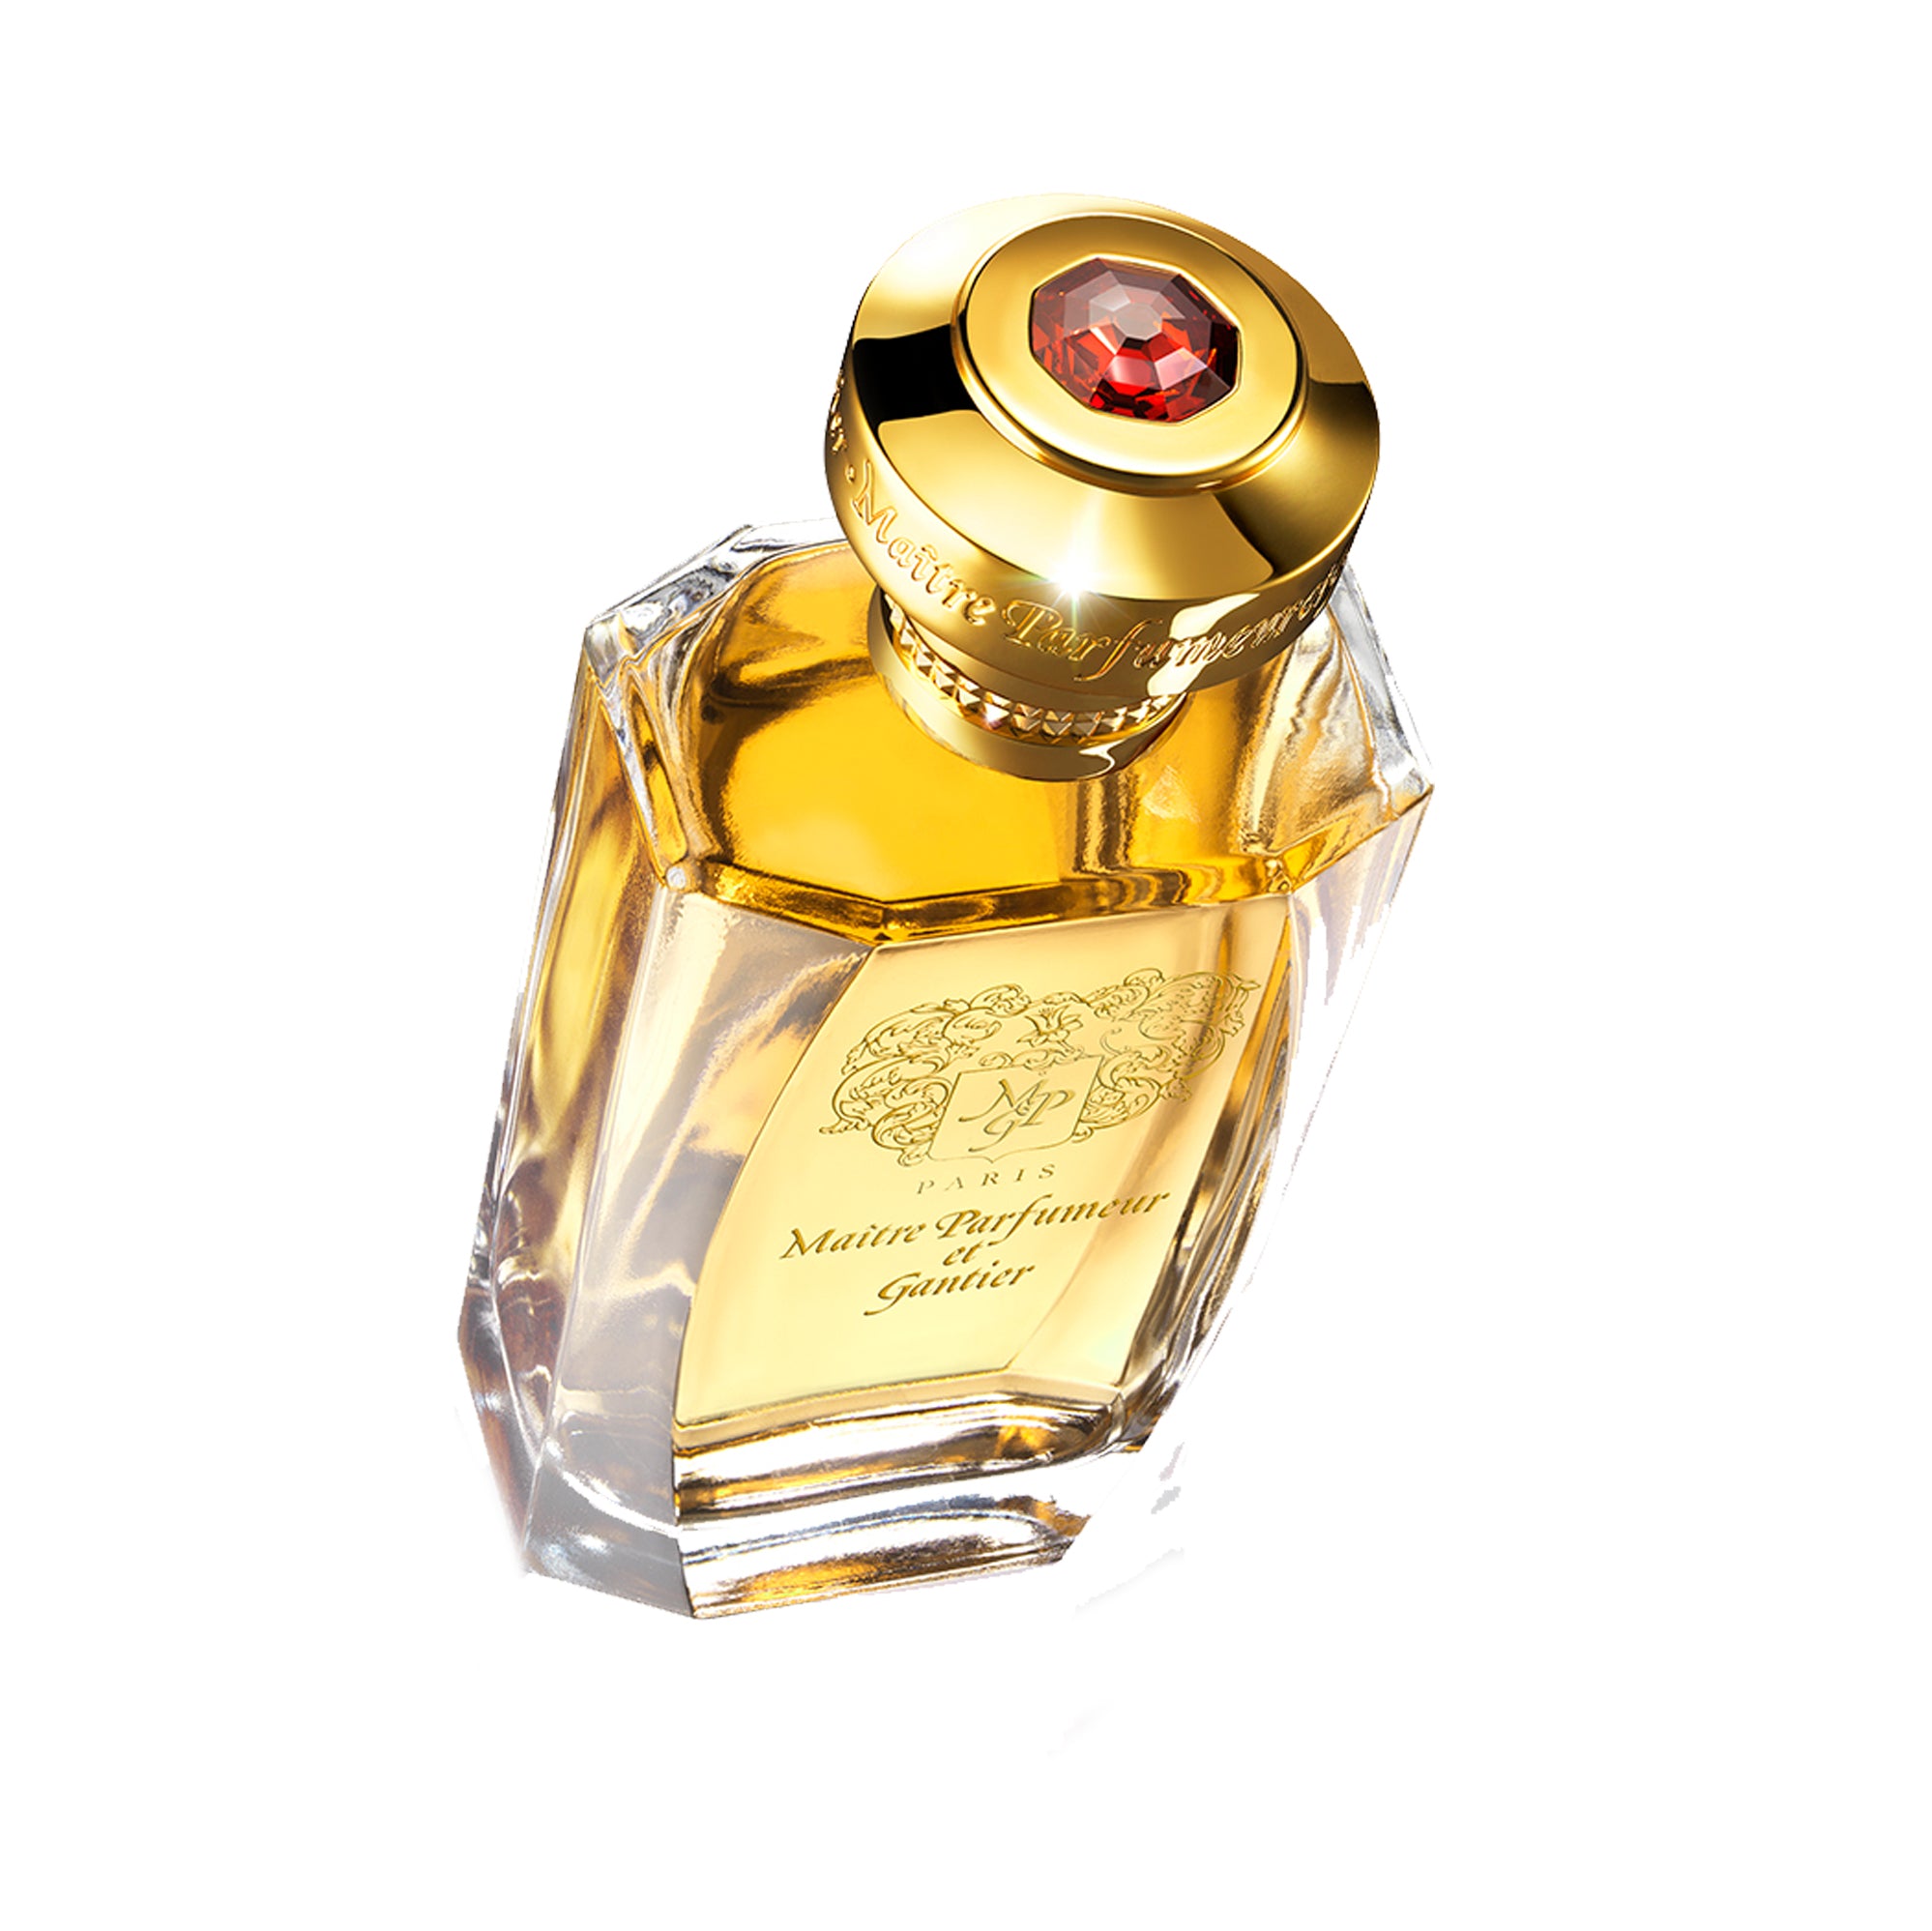 Ambre Précieux Eau de Parfum 120ml by MAÎTRE PARFUMEUR ET GANTIER